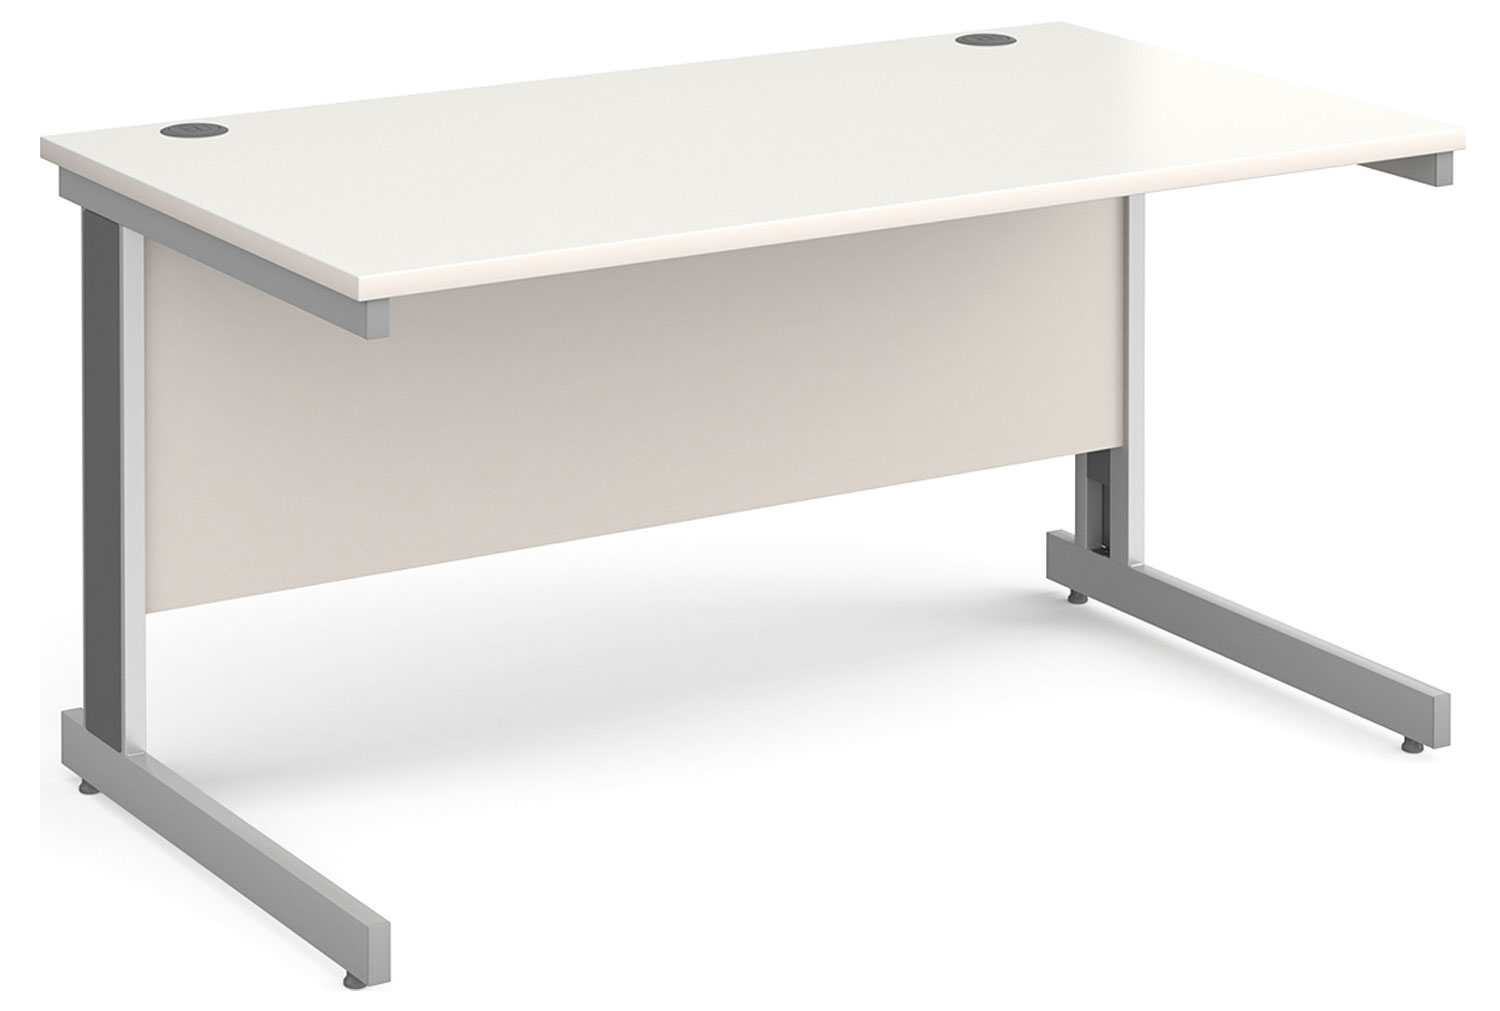 Tully Deluxe Rectangular Office Desk, 140wx80dx73h (cm), White